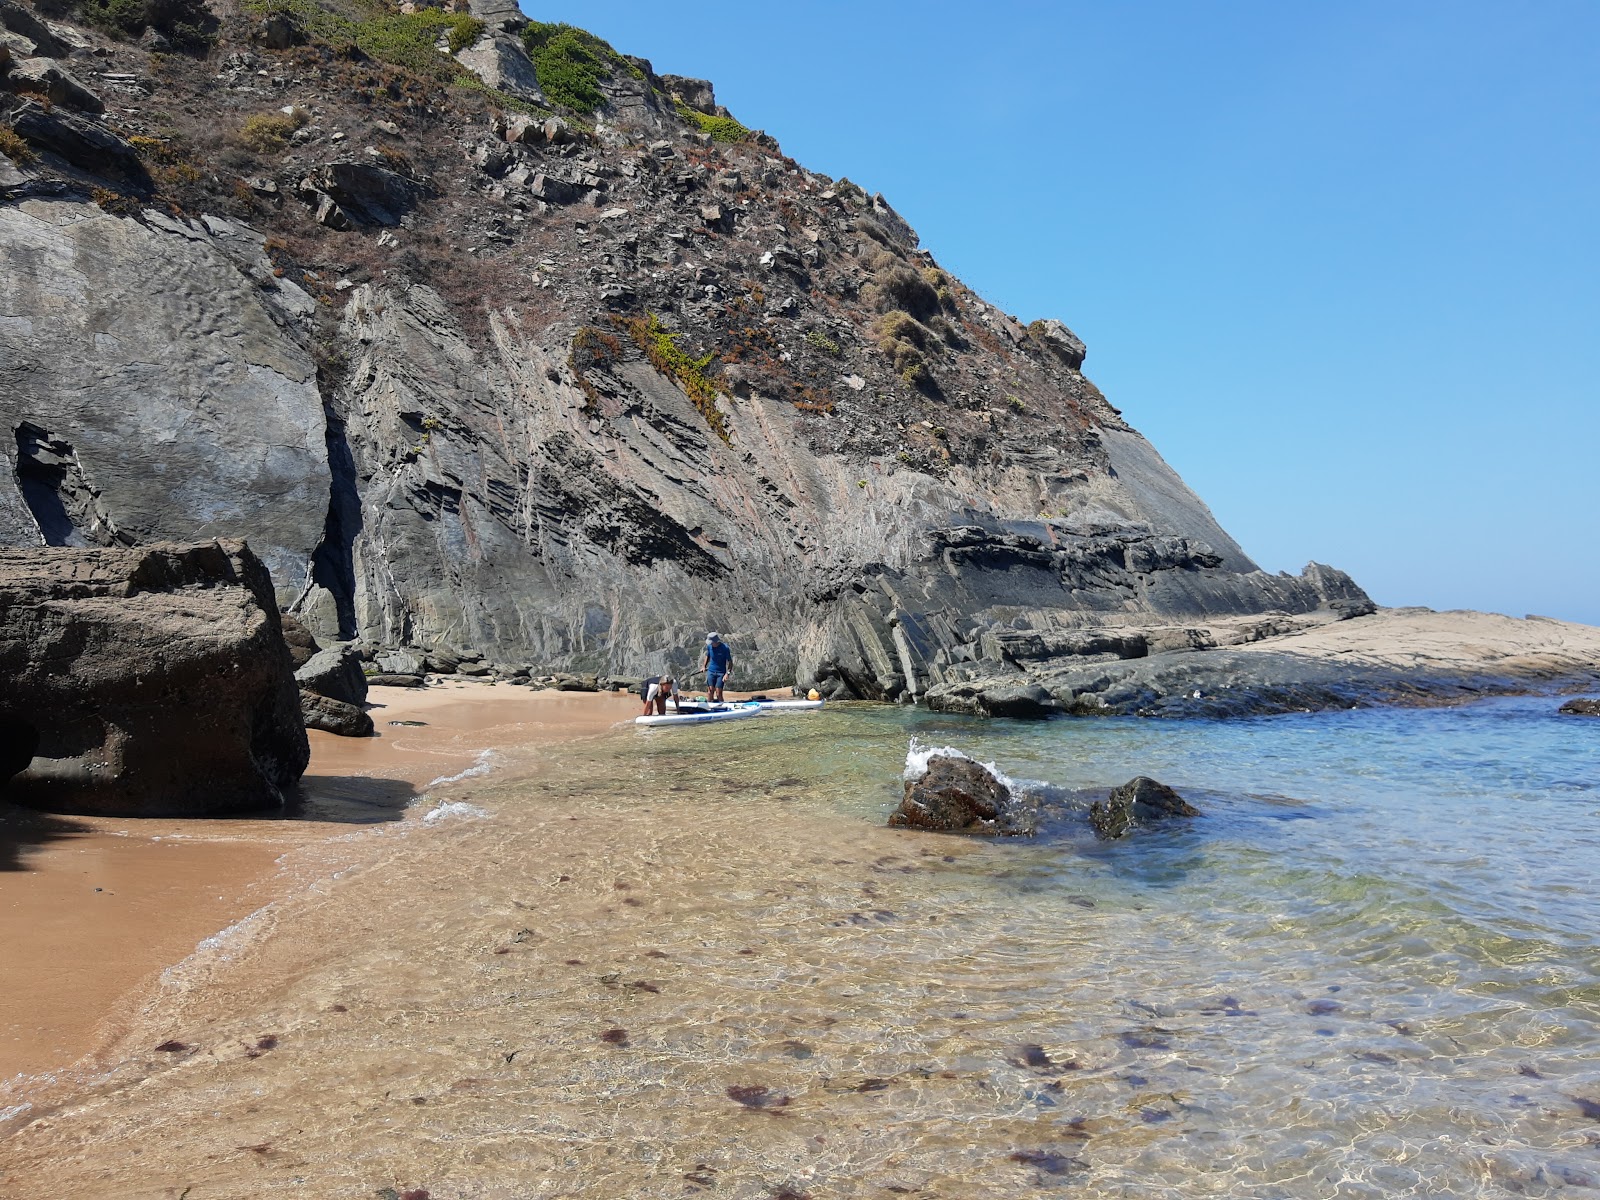 Valokuva Praia dos Machadosista. tukeutunut kallioilla